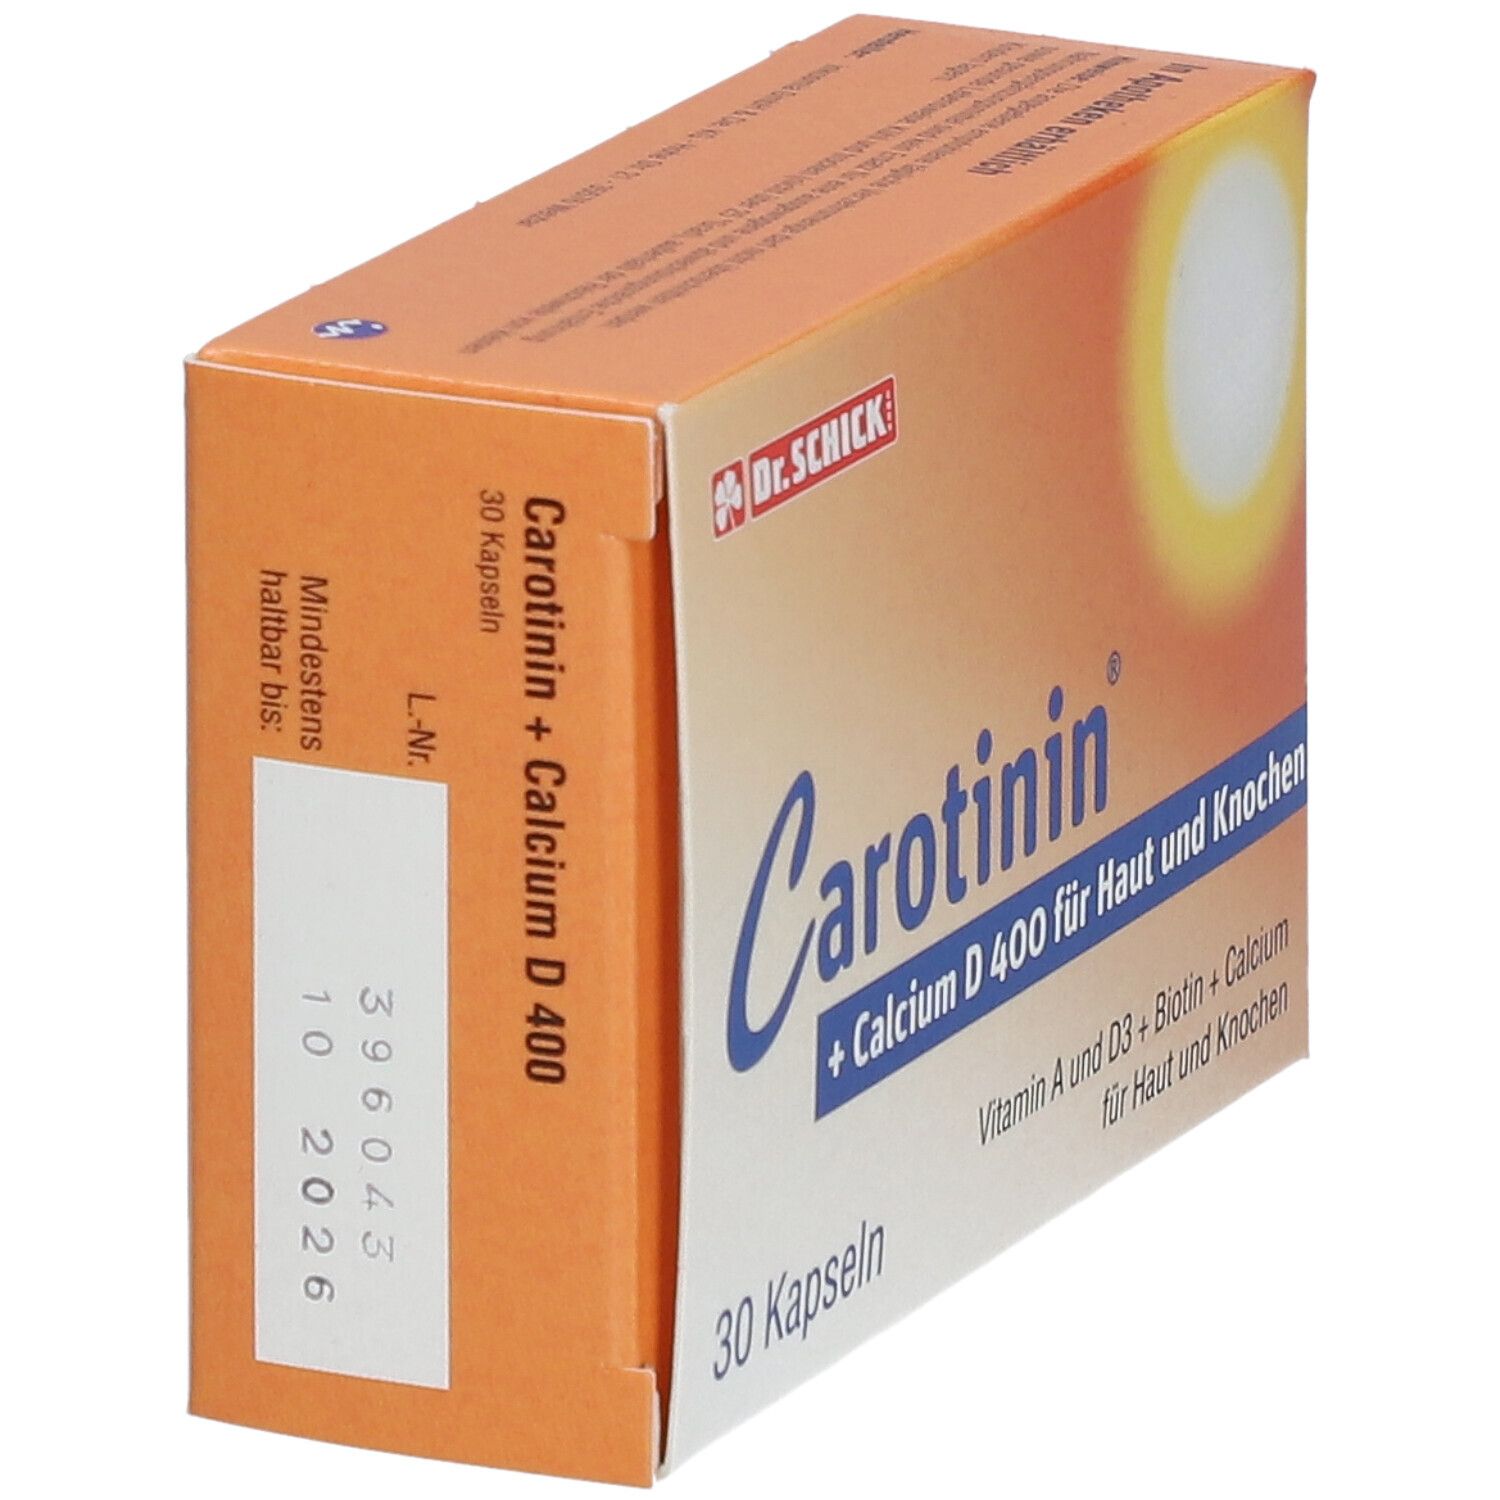 Carotin + Calcium D 400 Kapseln